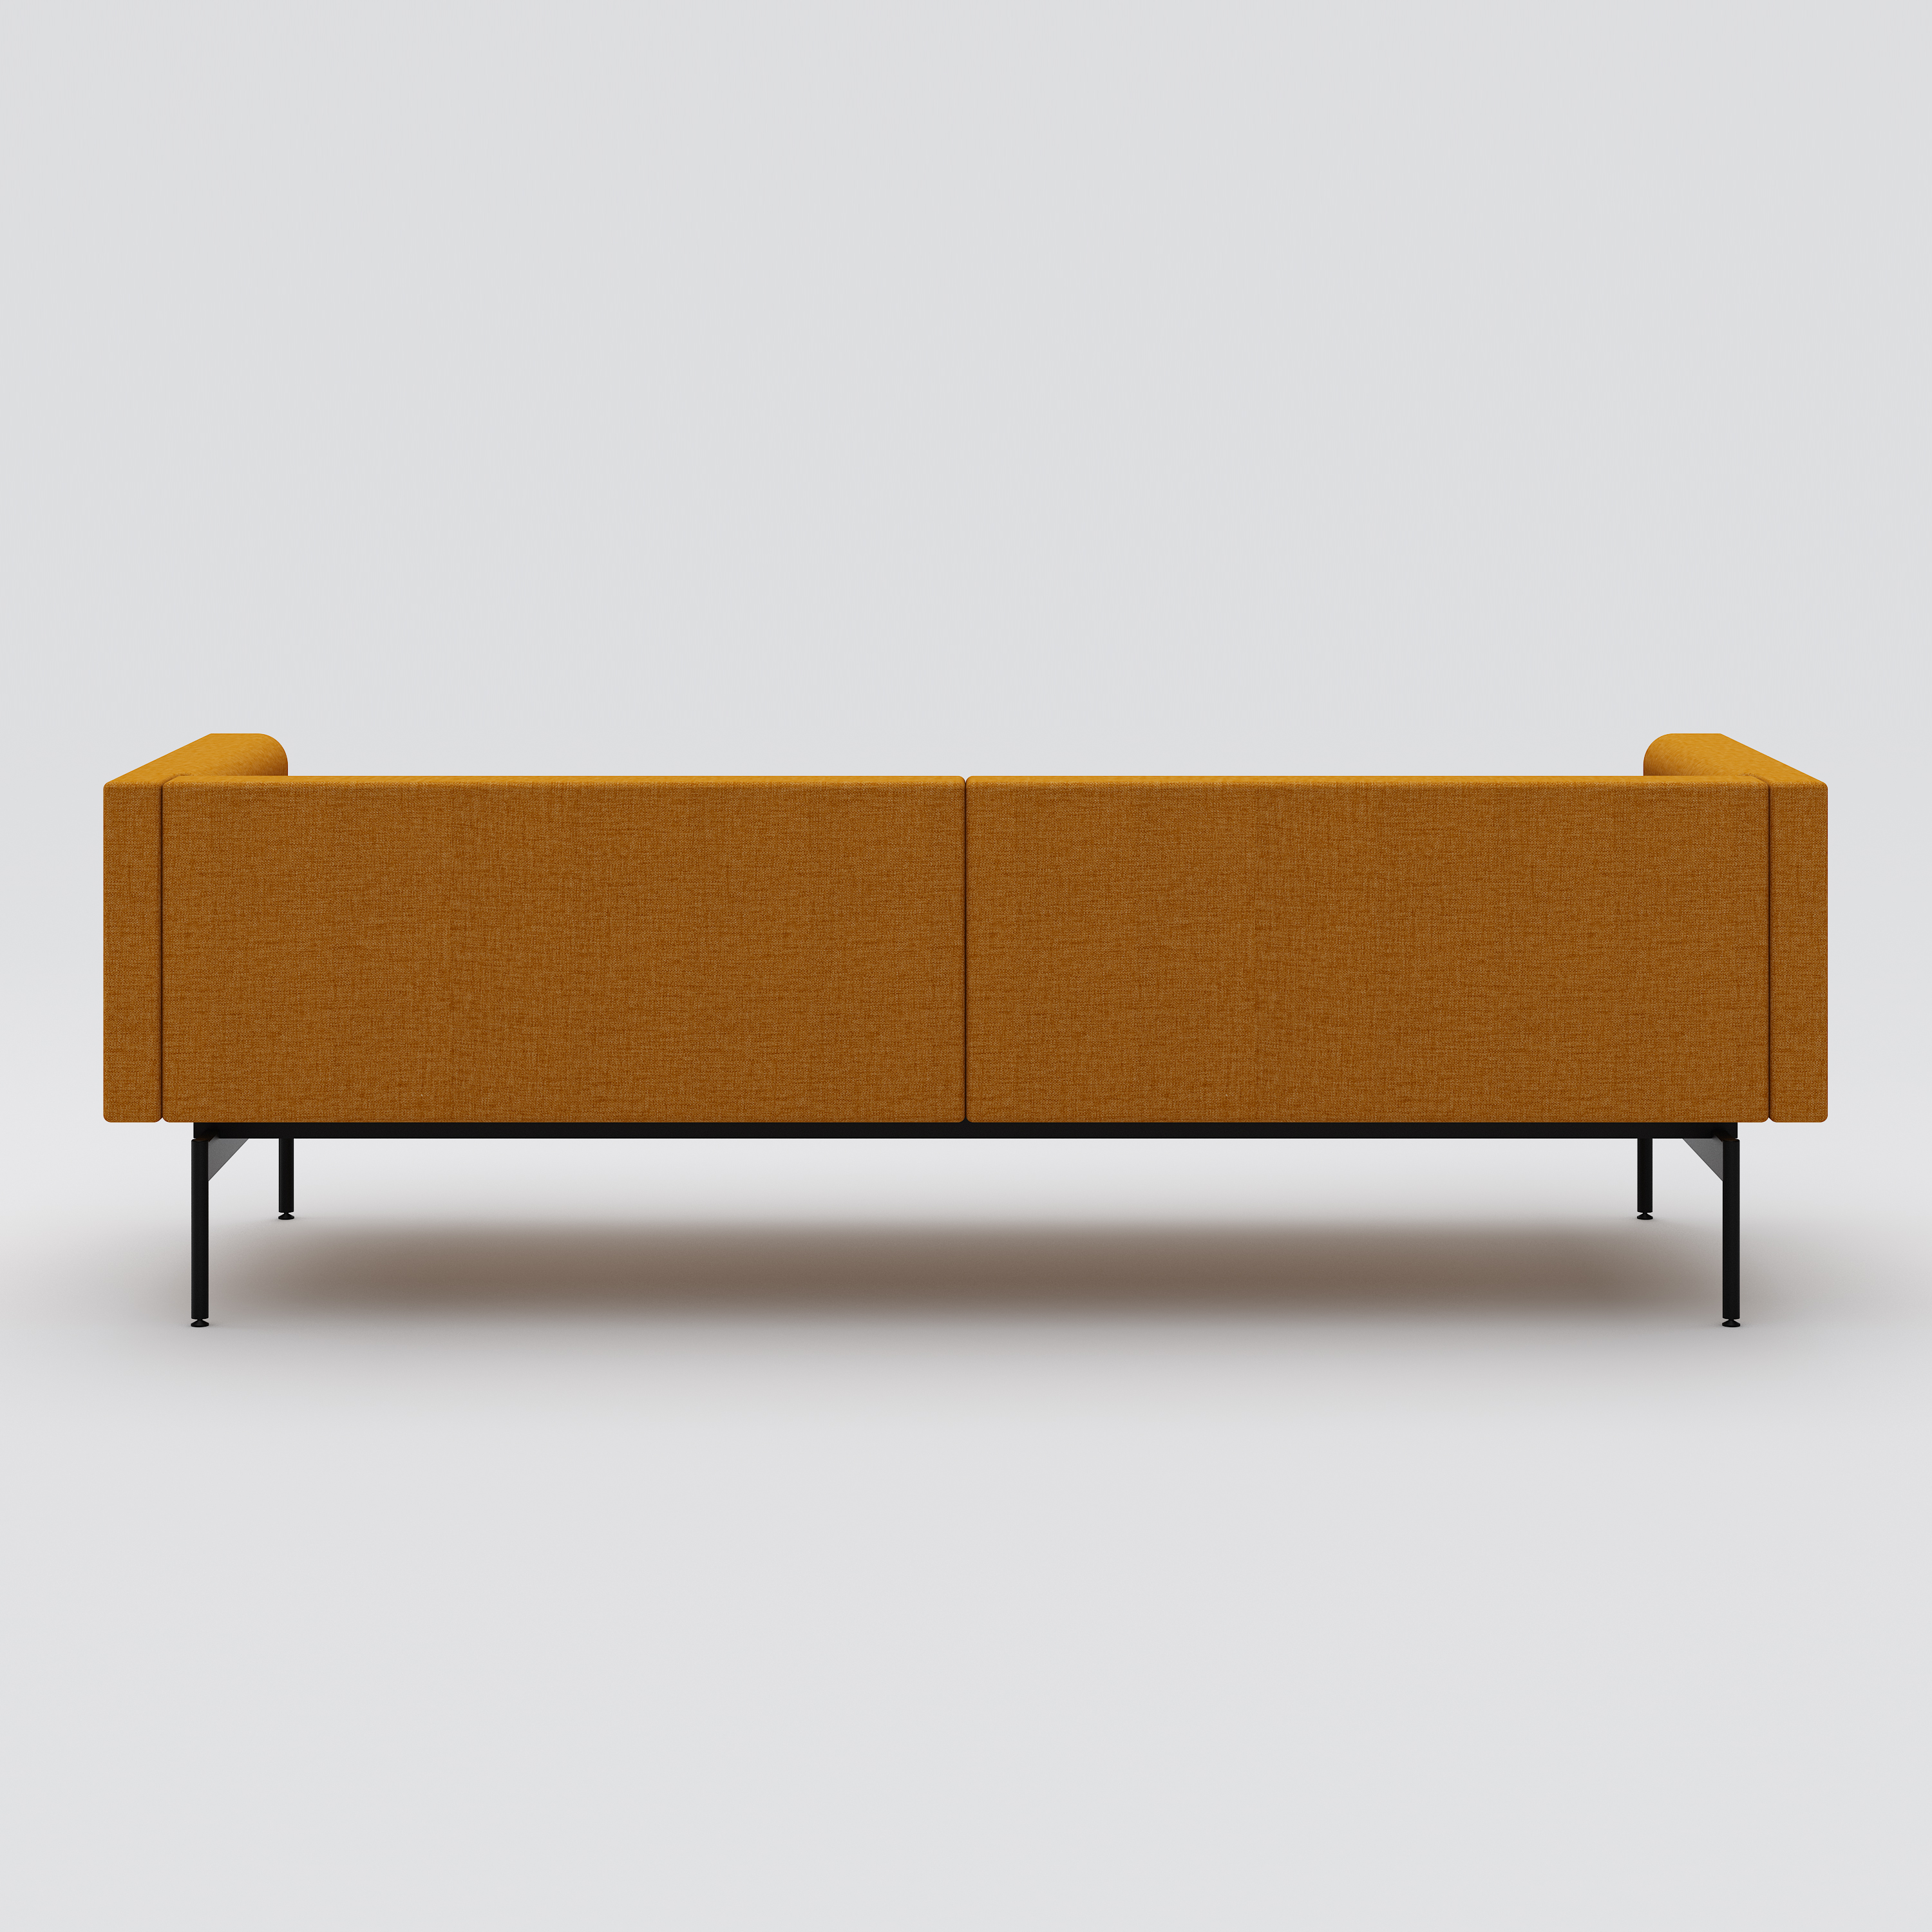 Sofa 3-seater Sans, black metal stand, mustard yellow